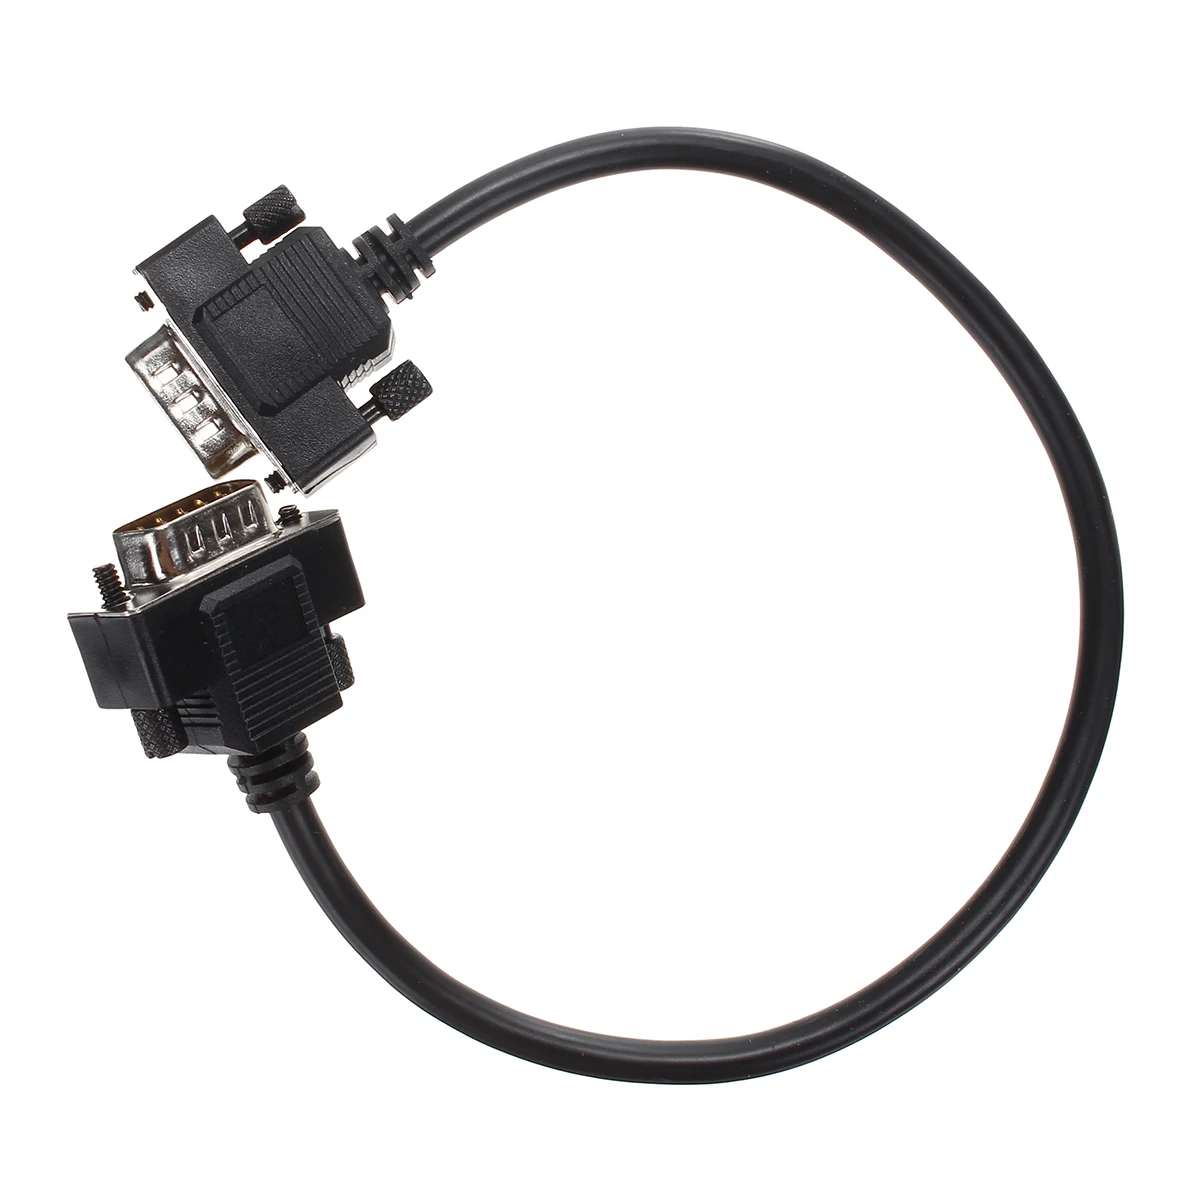 Адаптер для ПК USB Кабель адаптер Siemens S7 200/300/400 RS485 Profibus/MPI/PPI 9 контактный разъем